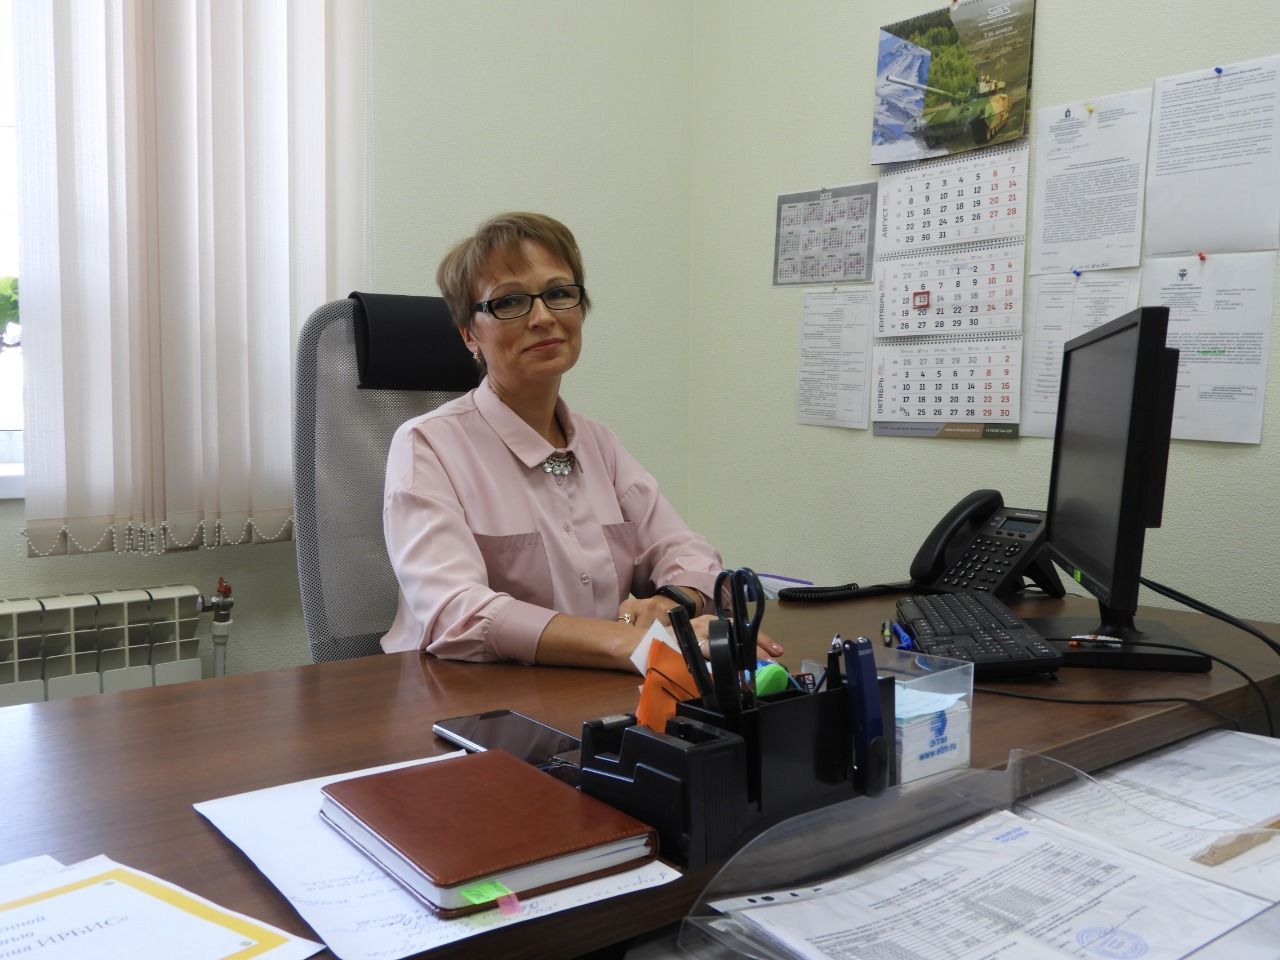 В Карпинск зашла новая Управляющая компания «Ирбис». Директор УК рассказала о компании и планах на город